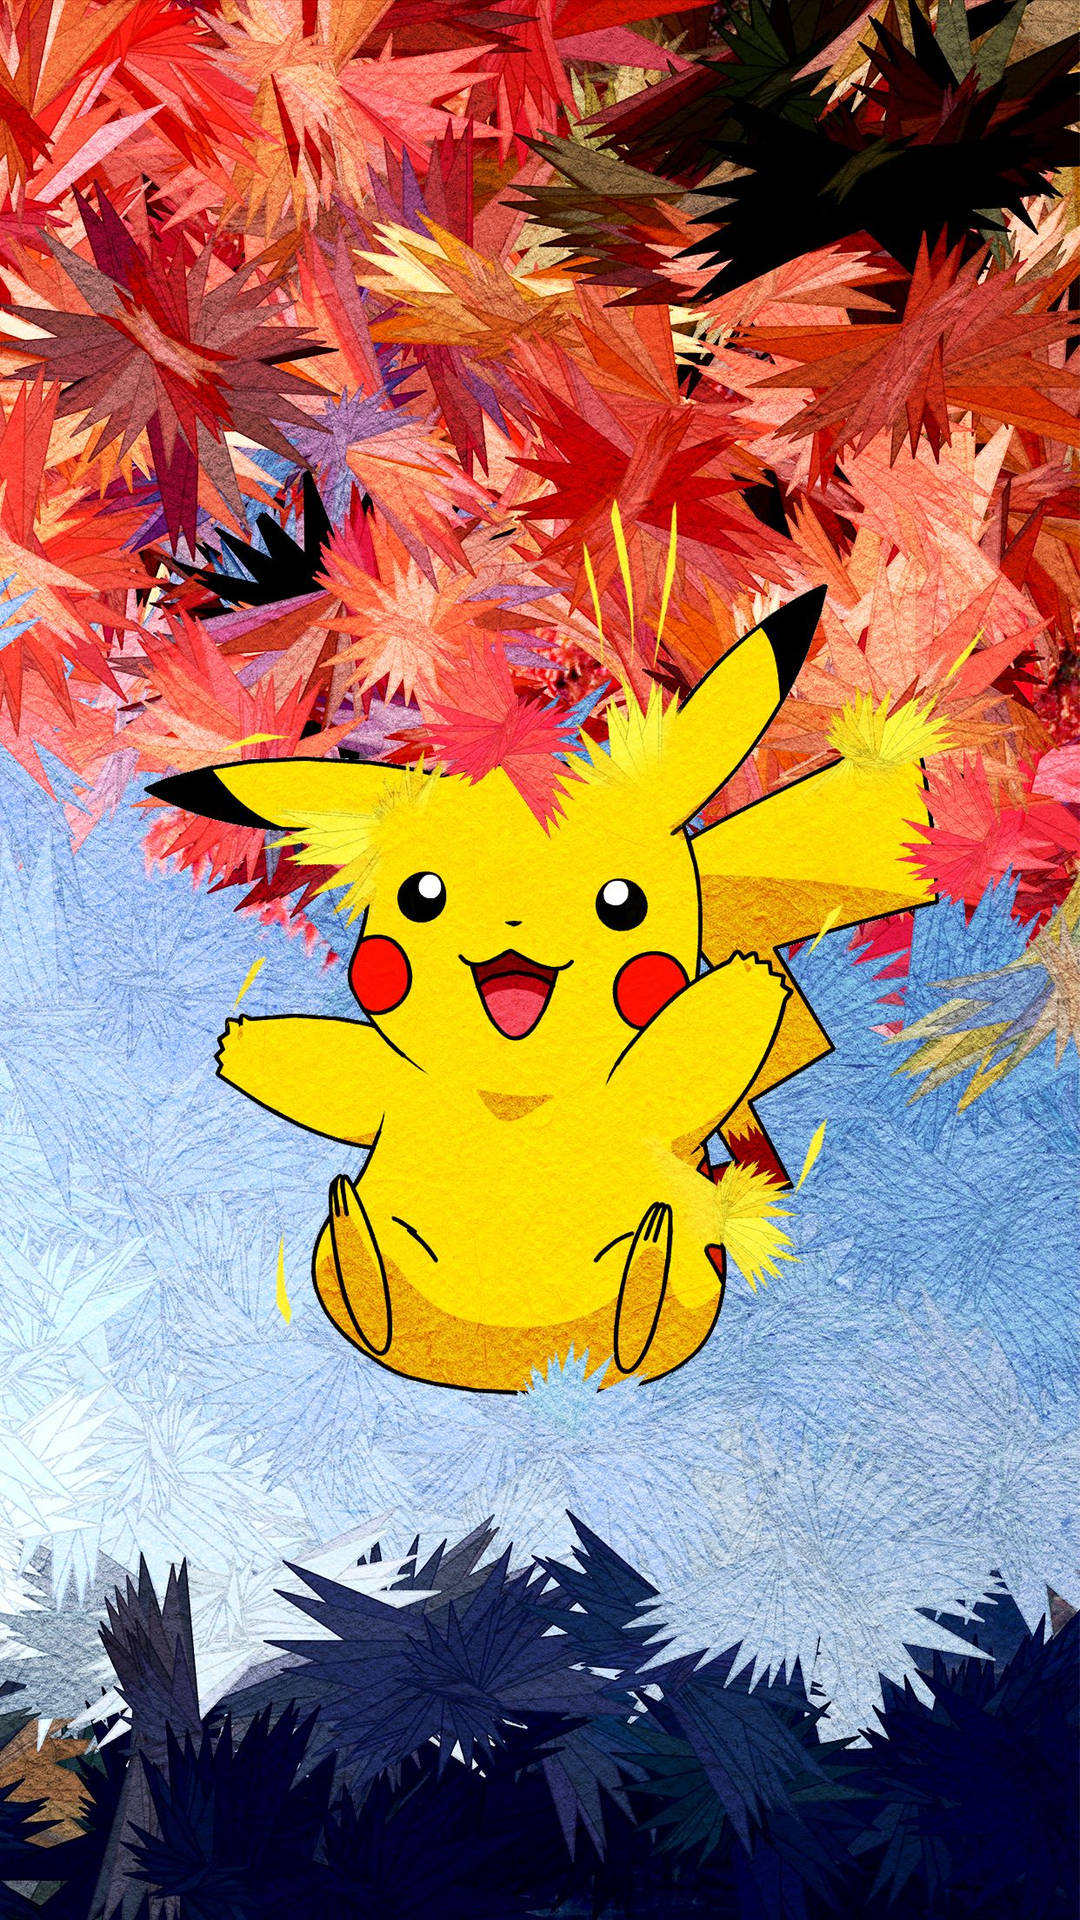 Pikachu 3d Electric Type Pokémon Picture